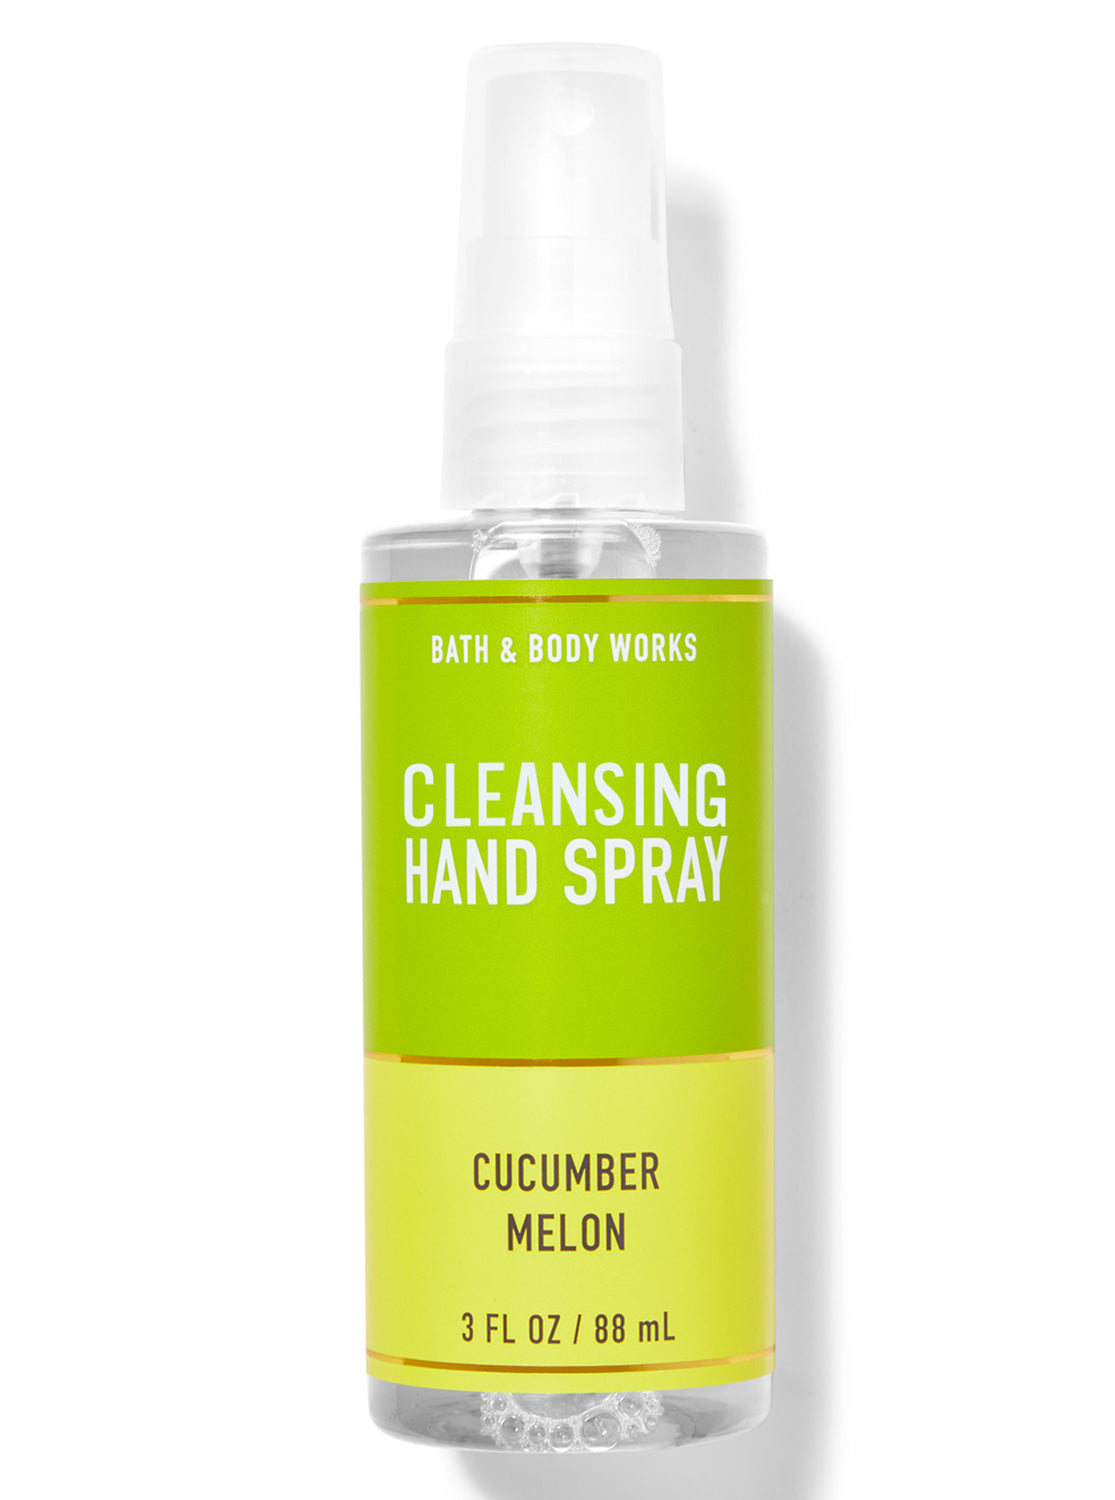 Bath & Body Works Cucumber Melon Cleansing Hand Spray, 88 ml